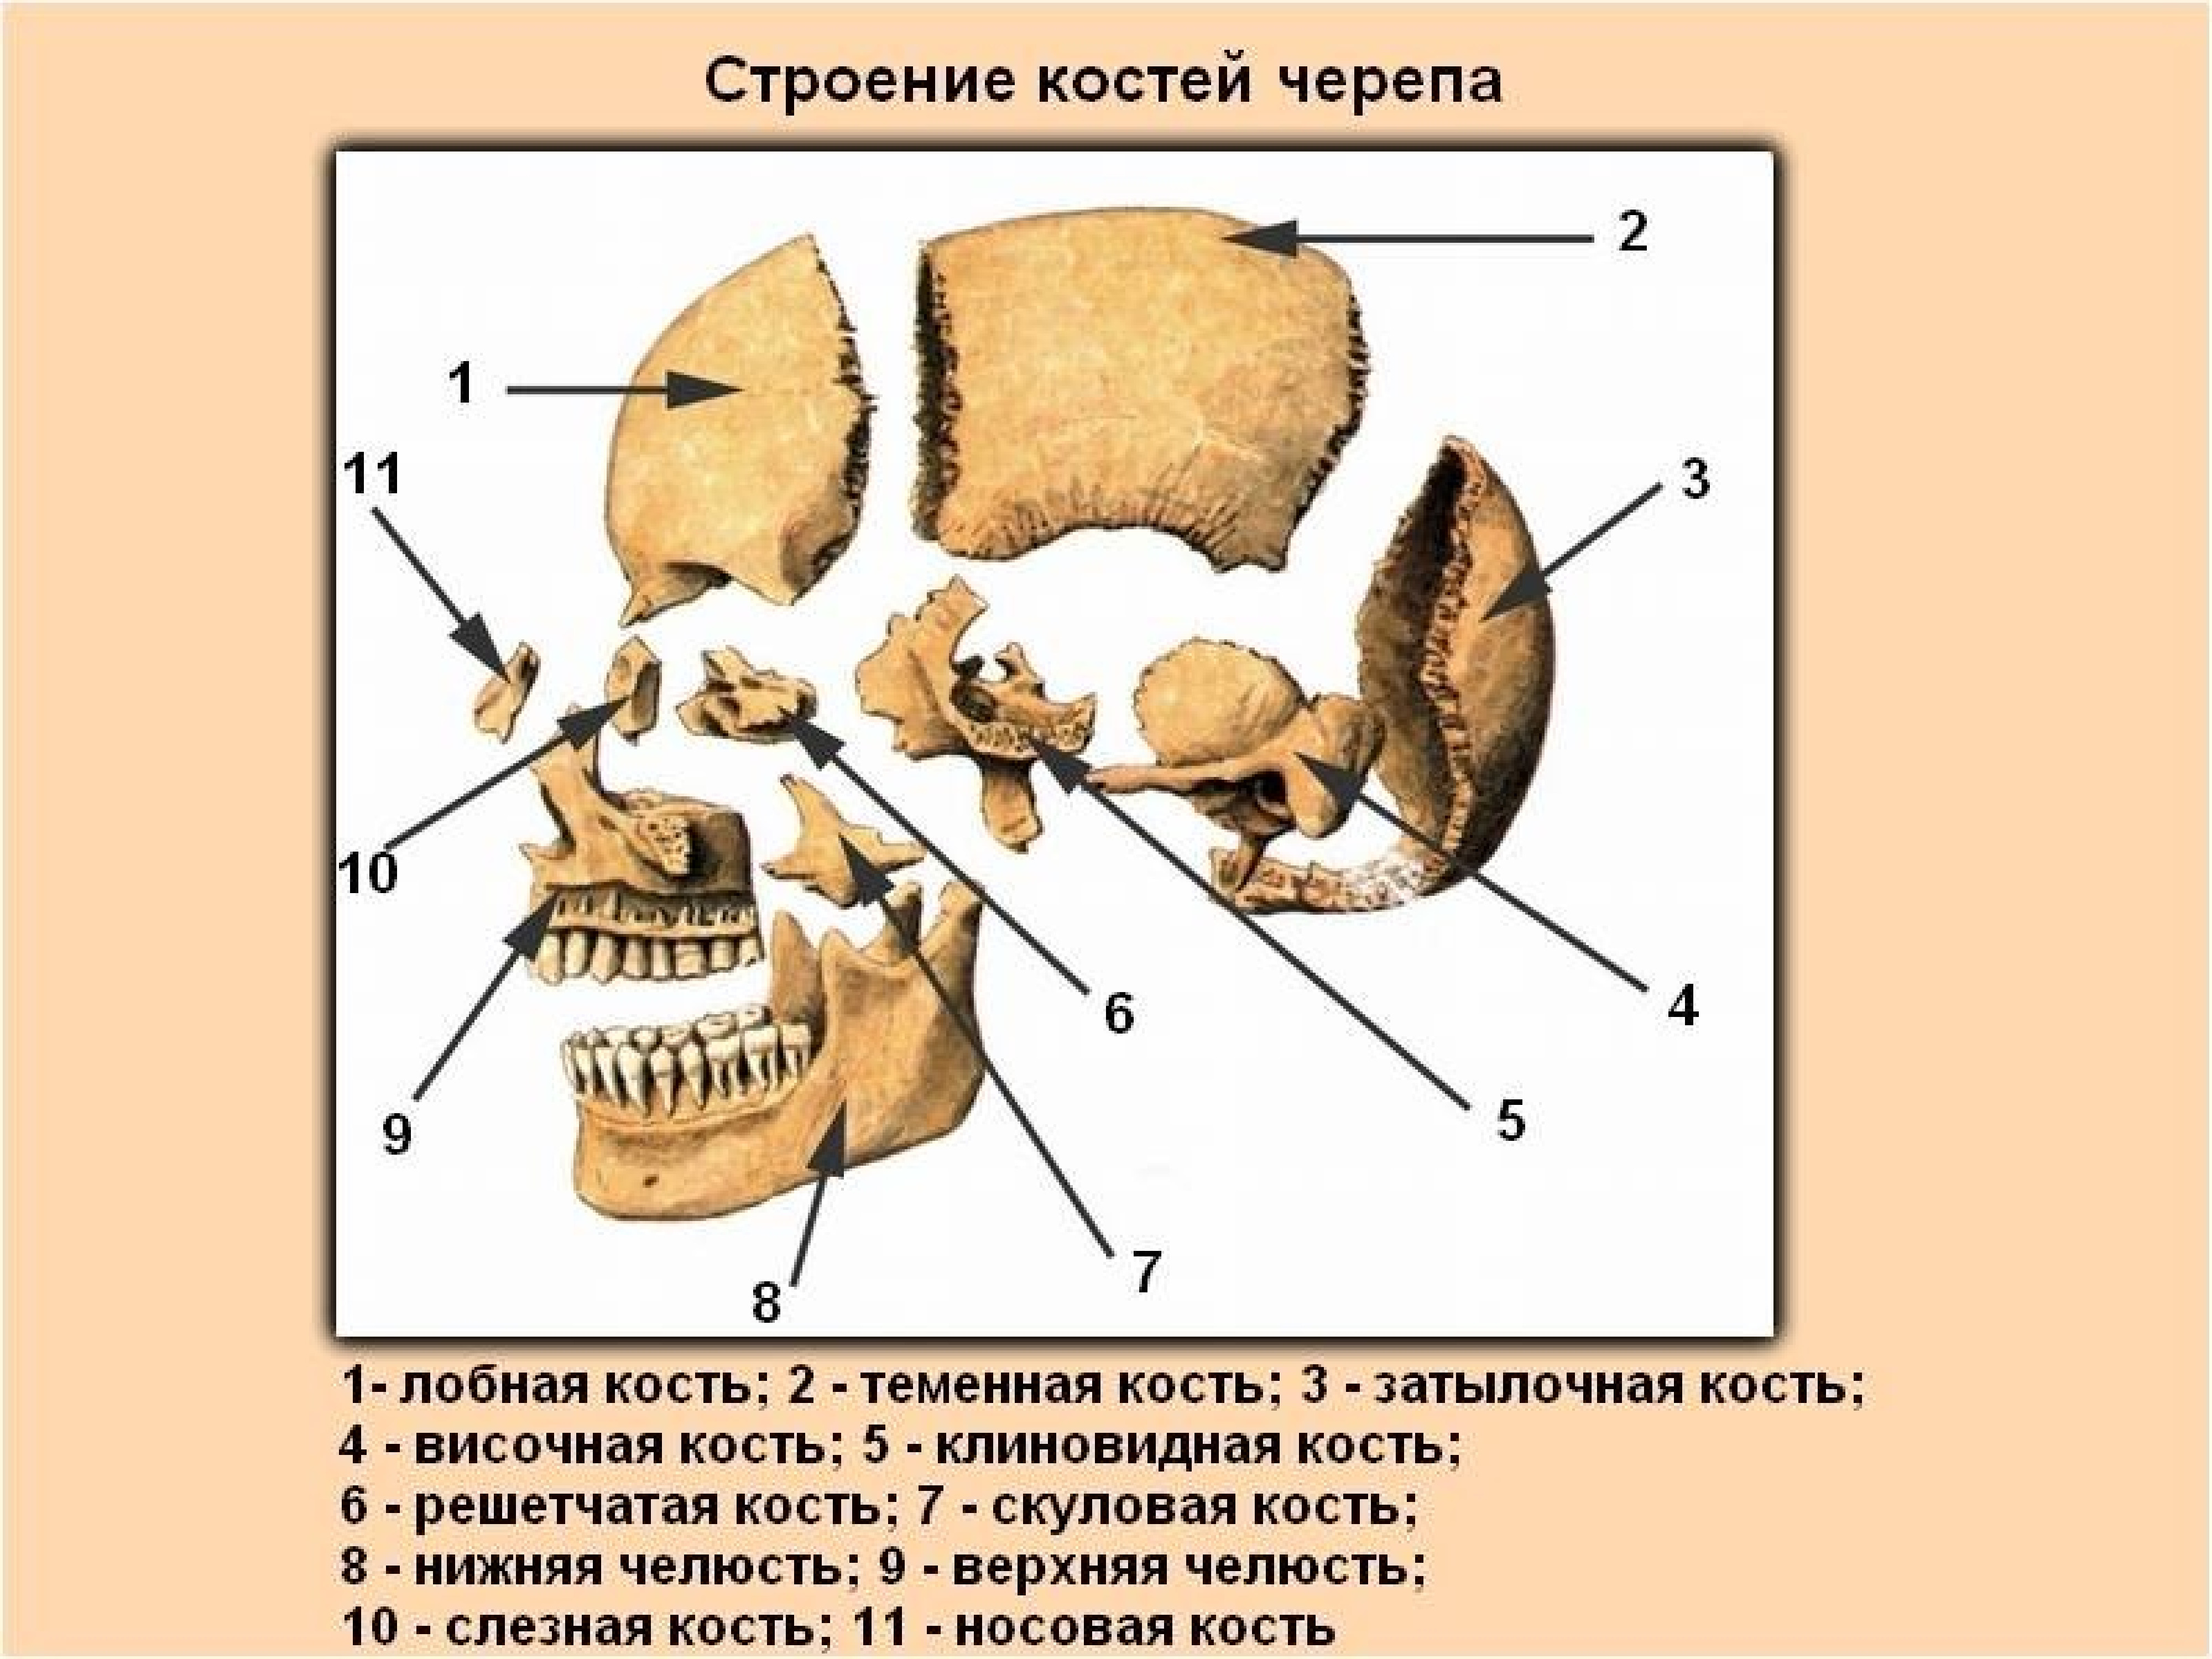 Строение костей черепа человека